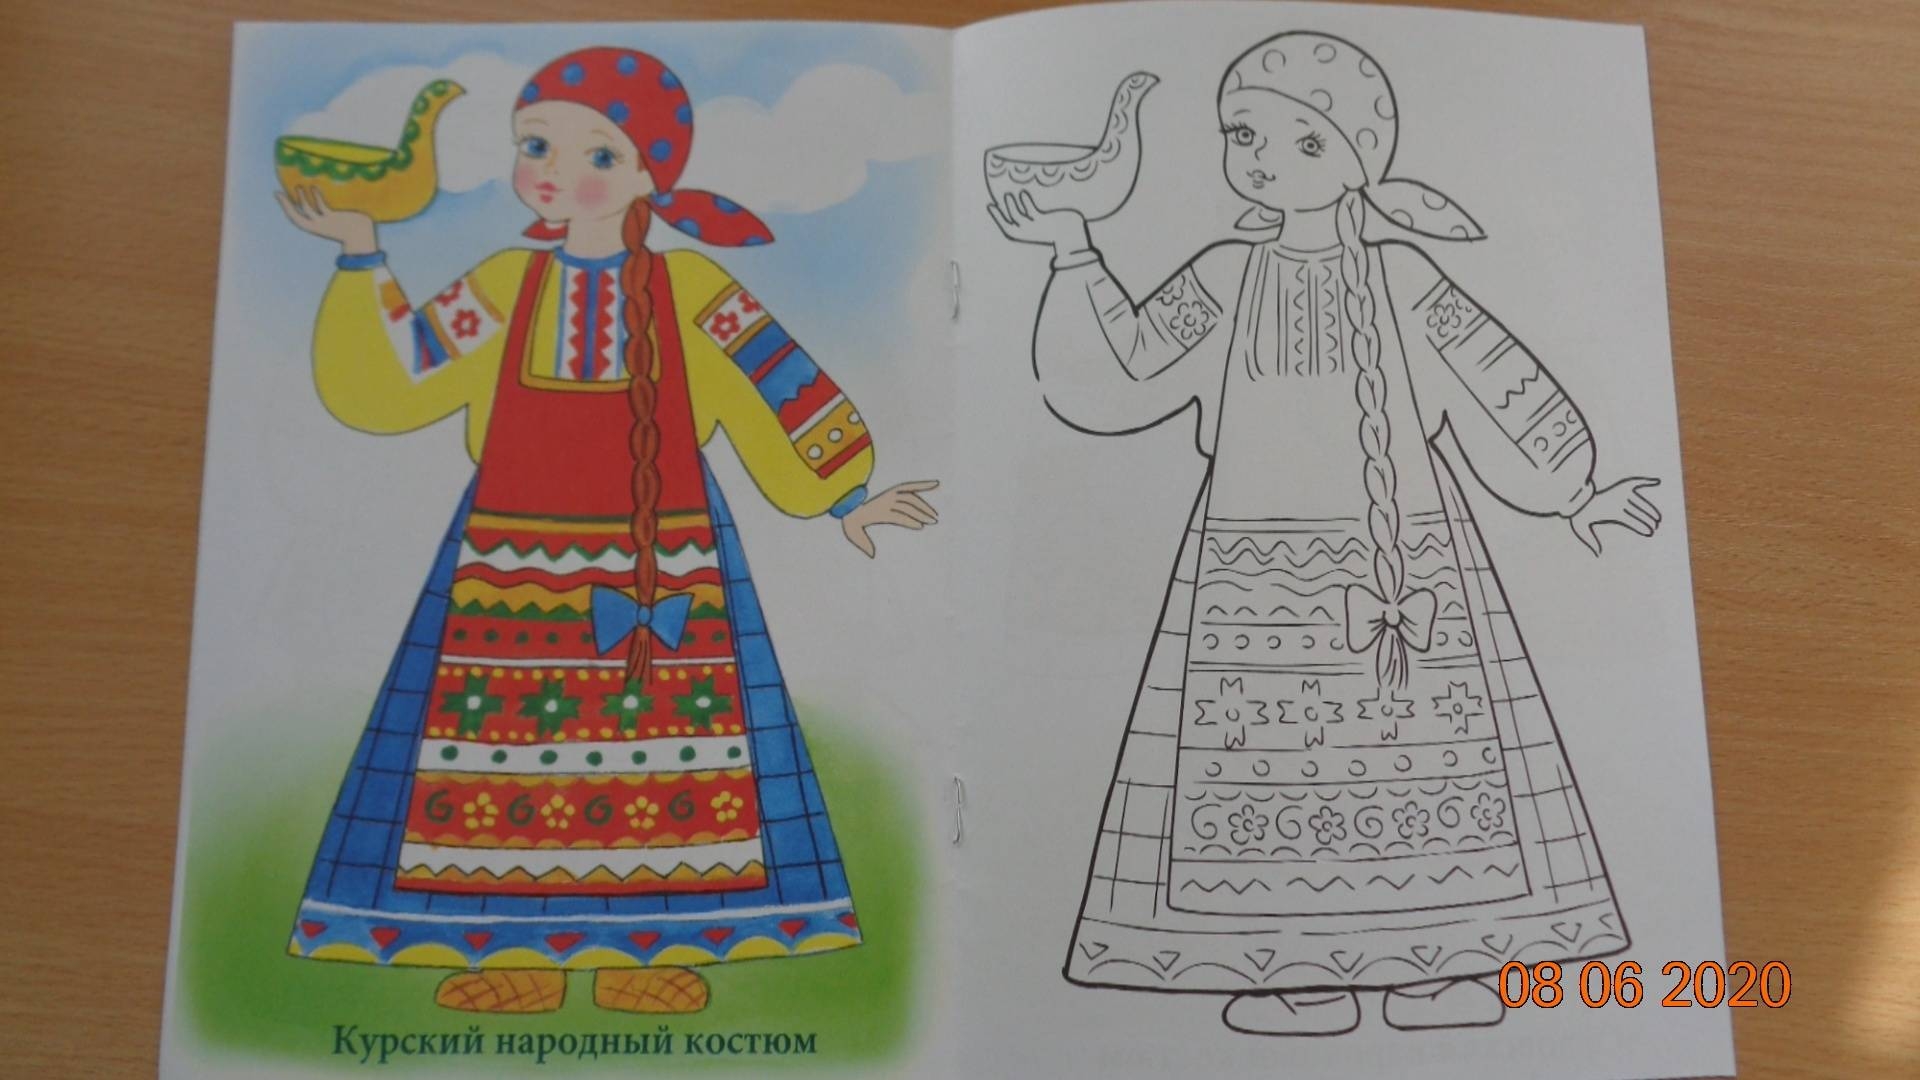 Удмуртский национальный костюм в картинках для детей.